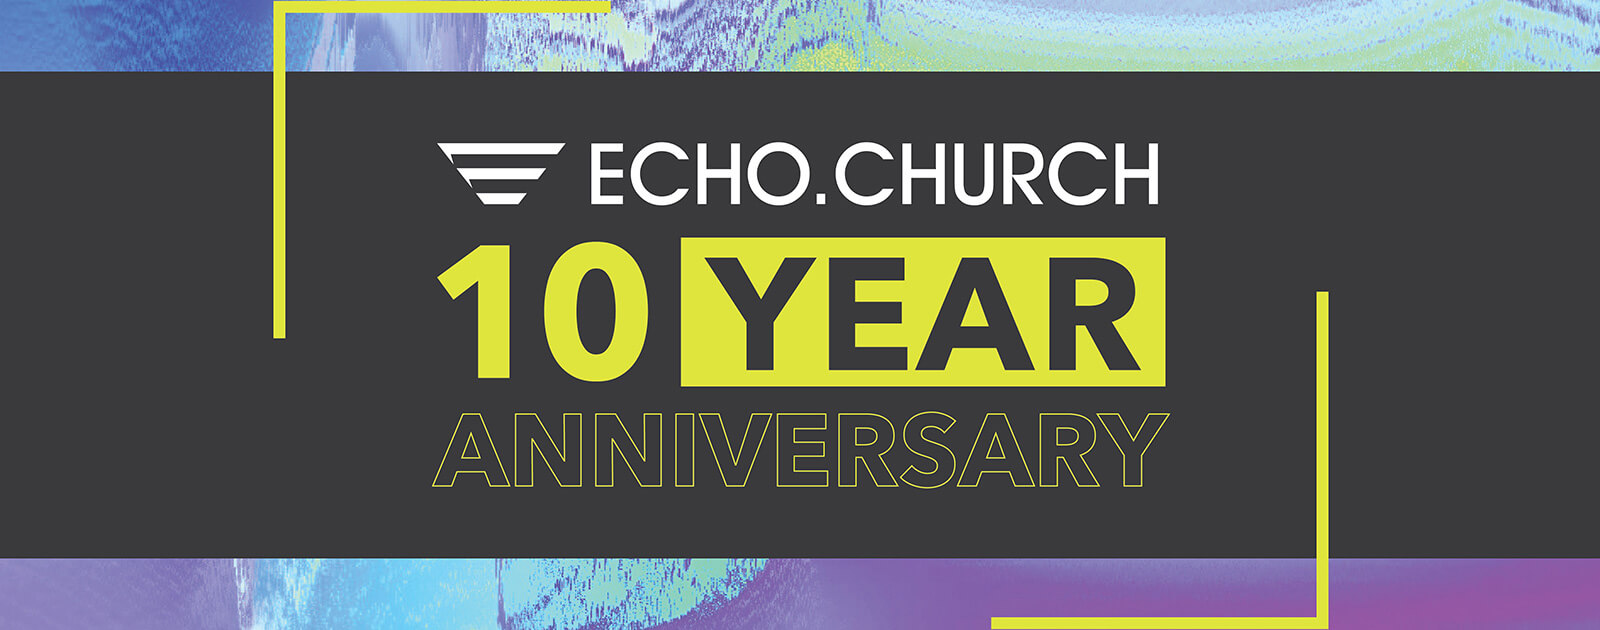 Echo.Church 10-Year Anniversary